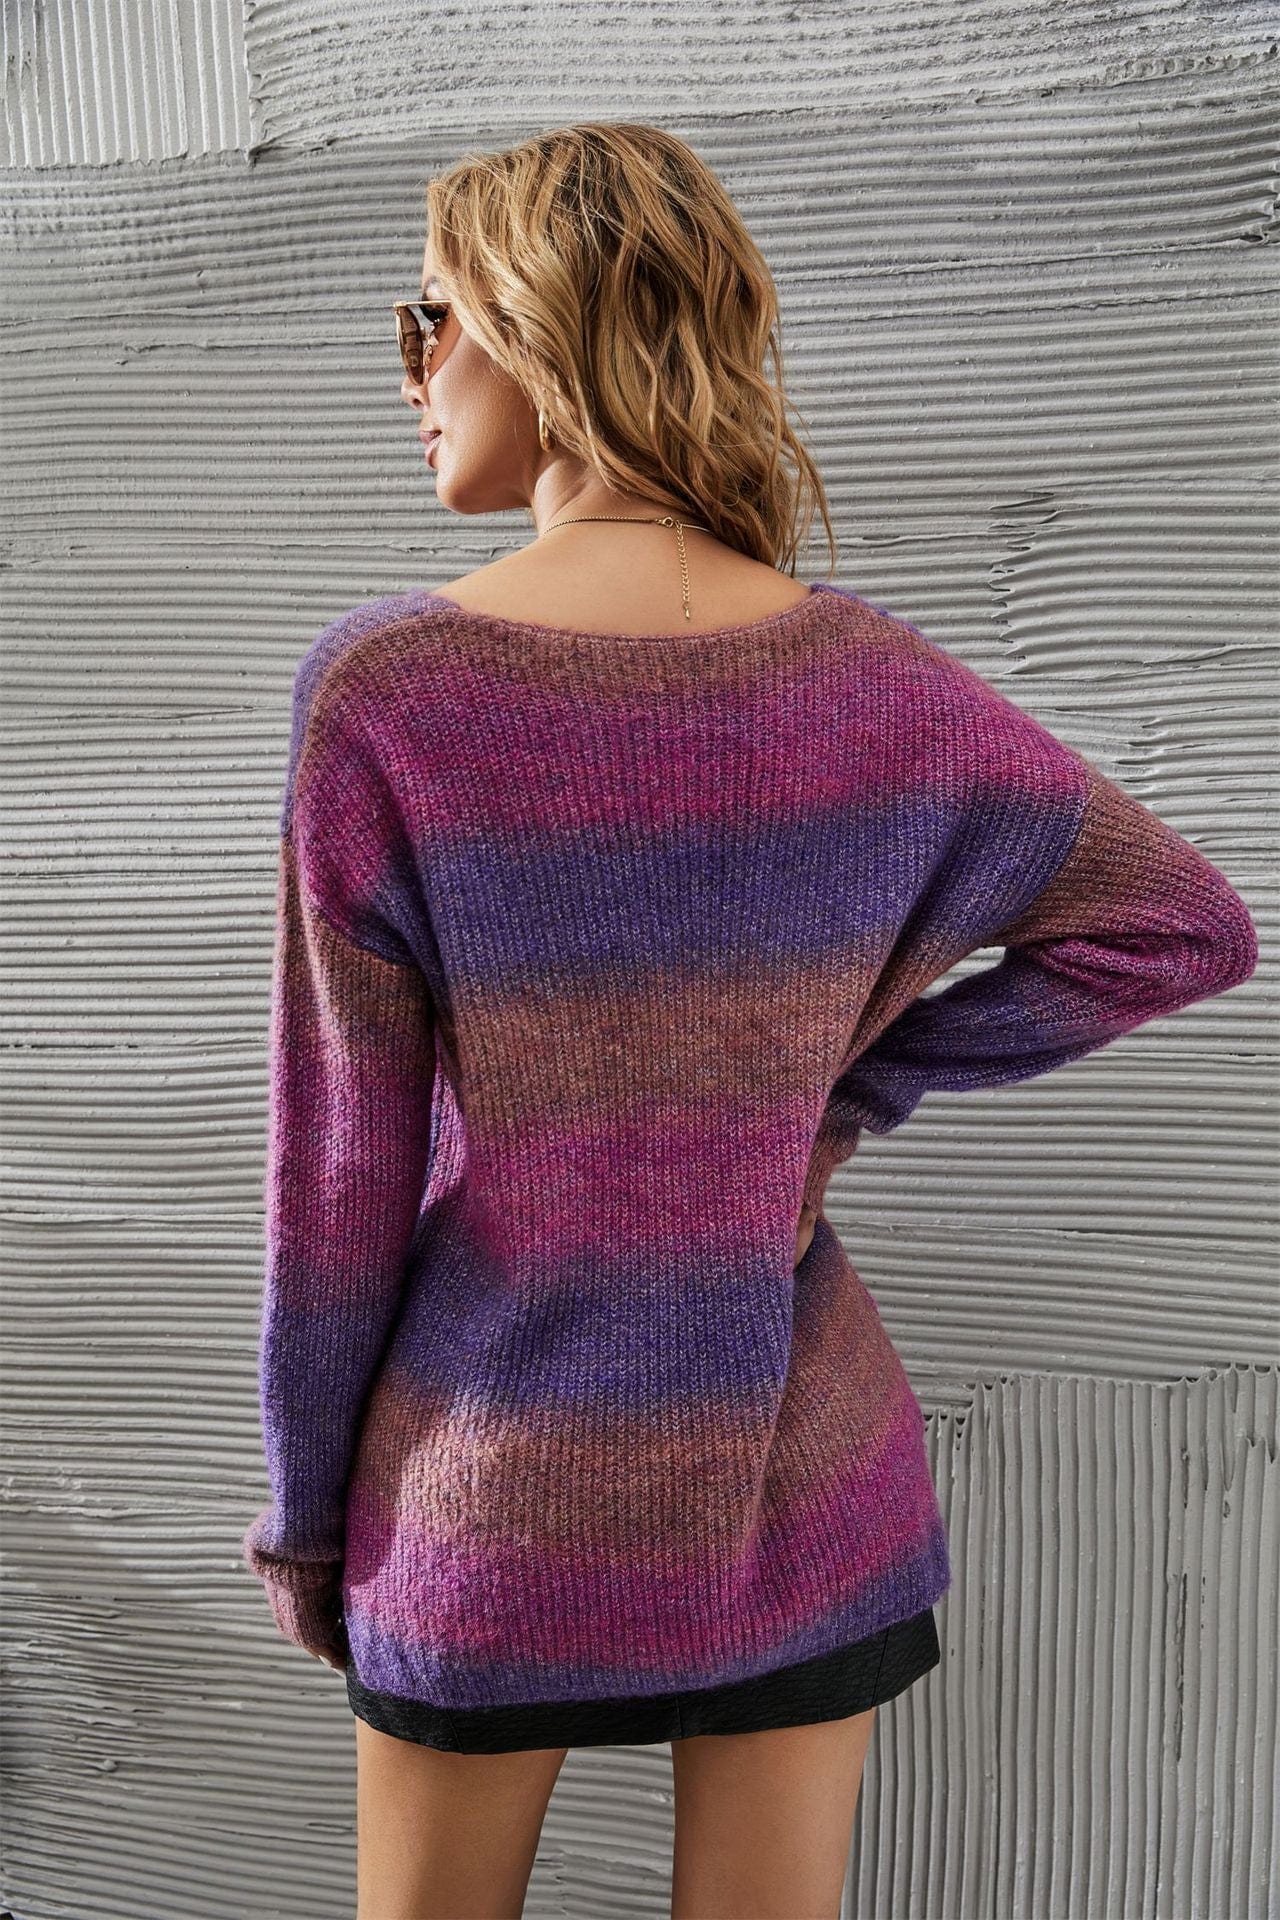 PettiCloth Selene Tie Dye Sweater